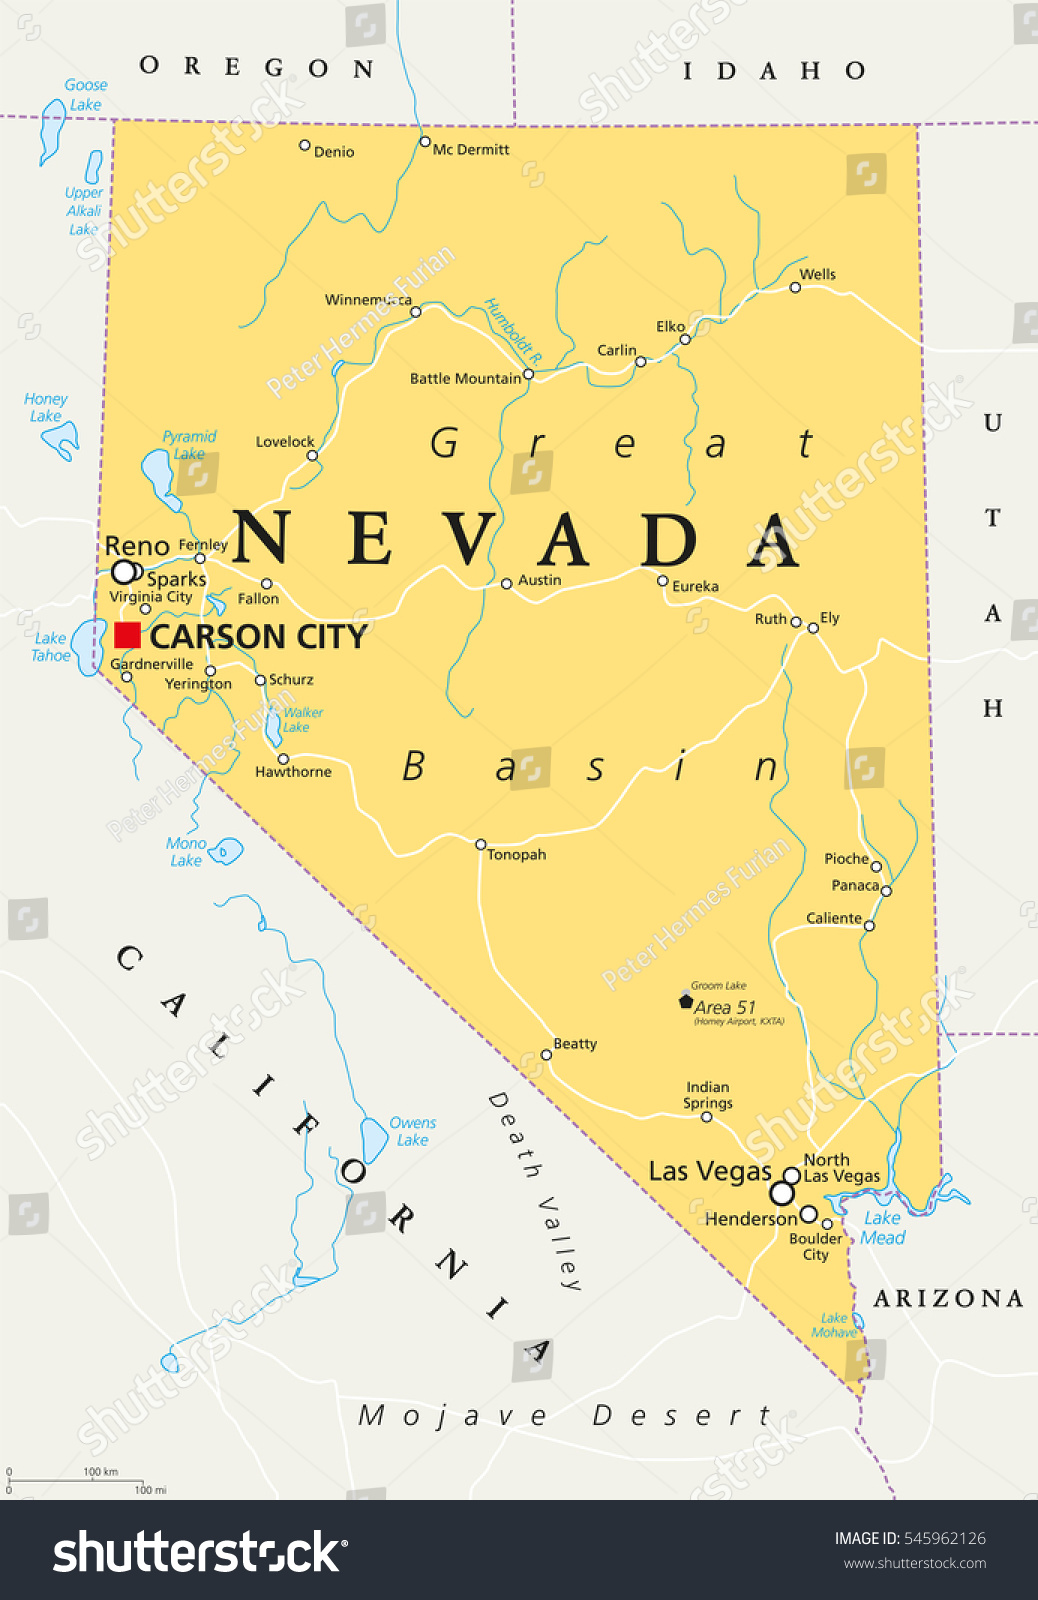 Nevada Maps Las Vegas Nevada Maps Official Site